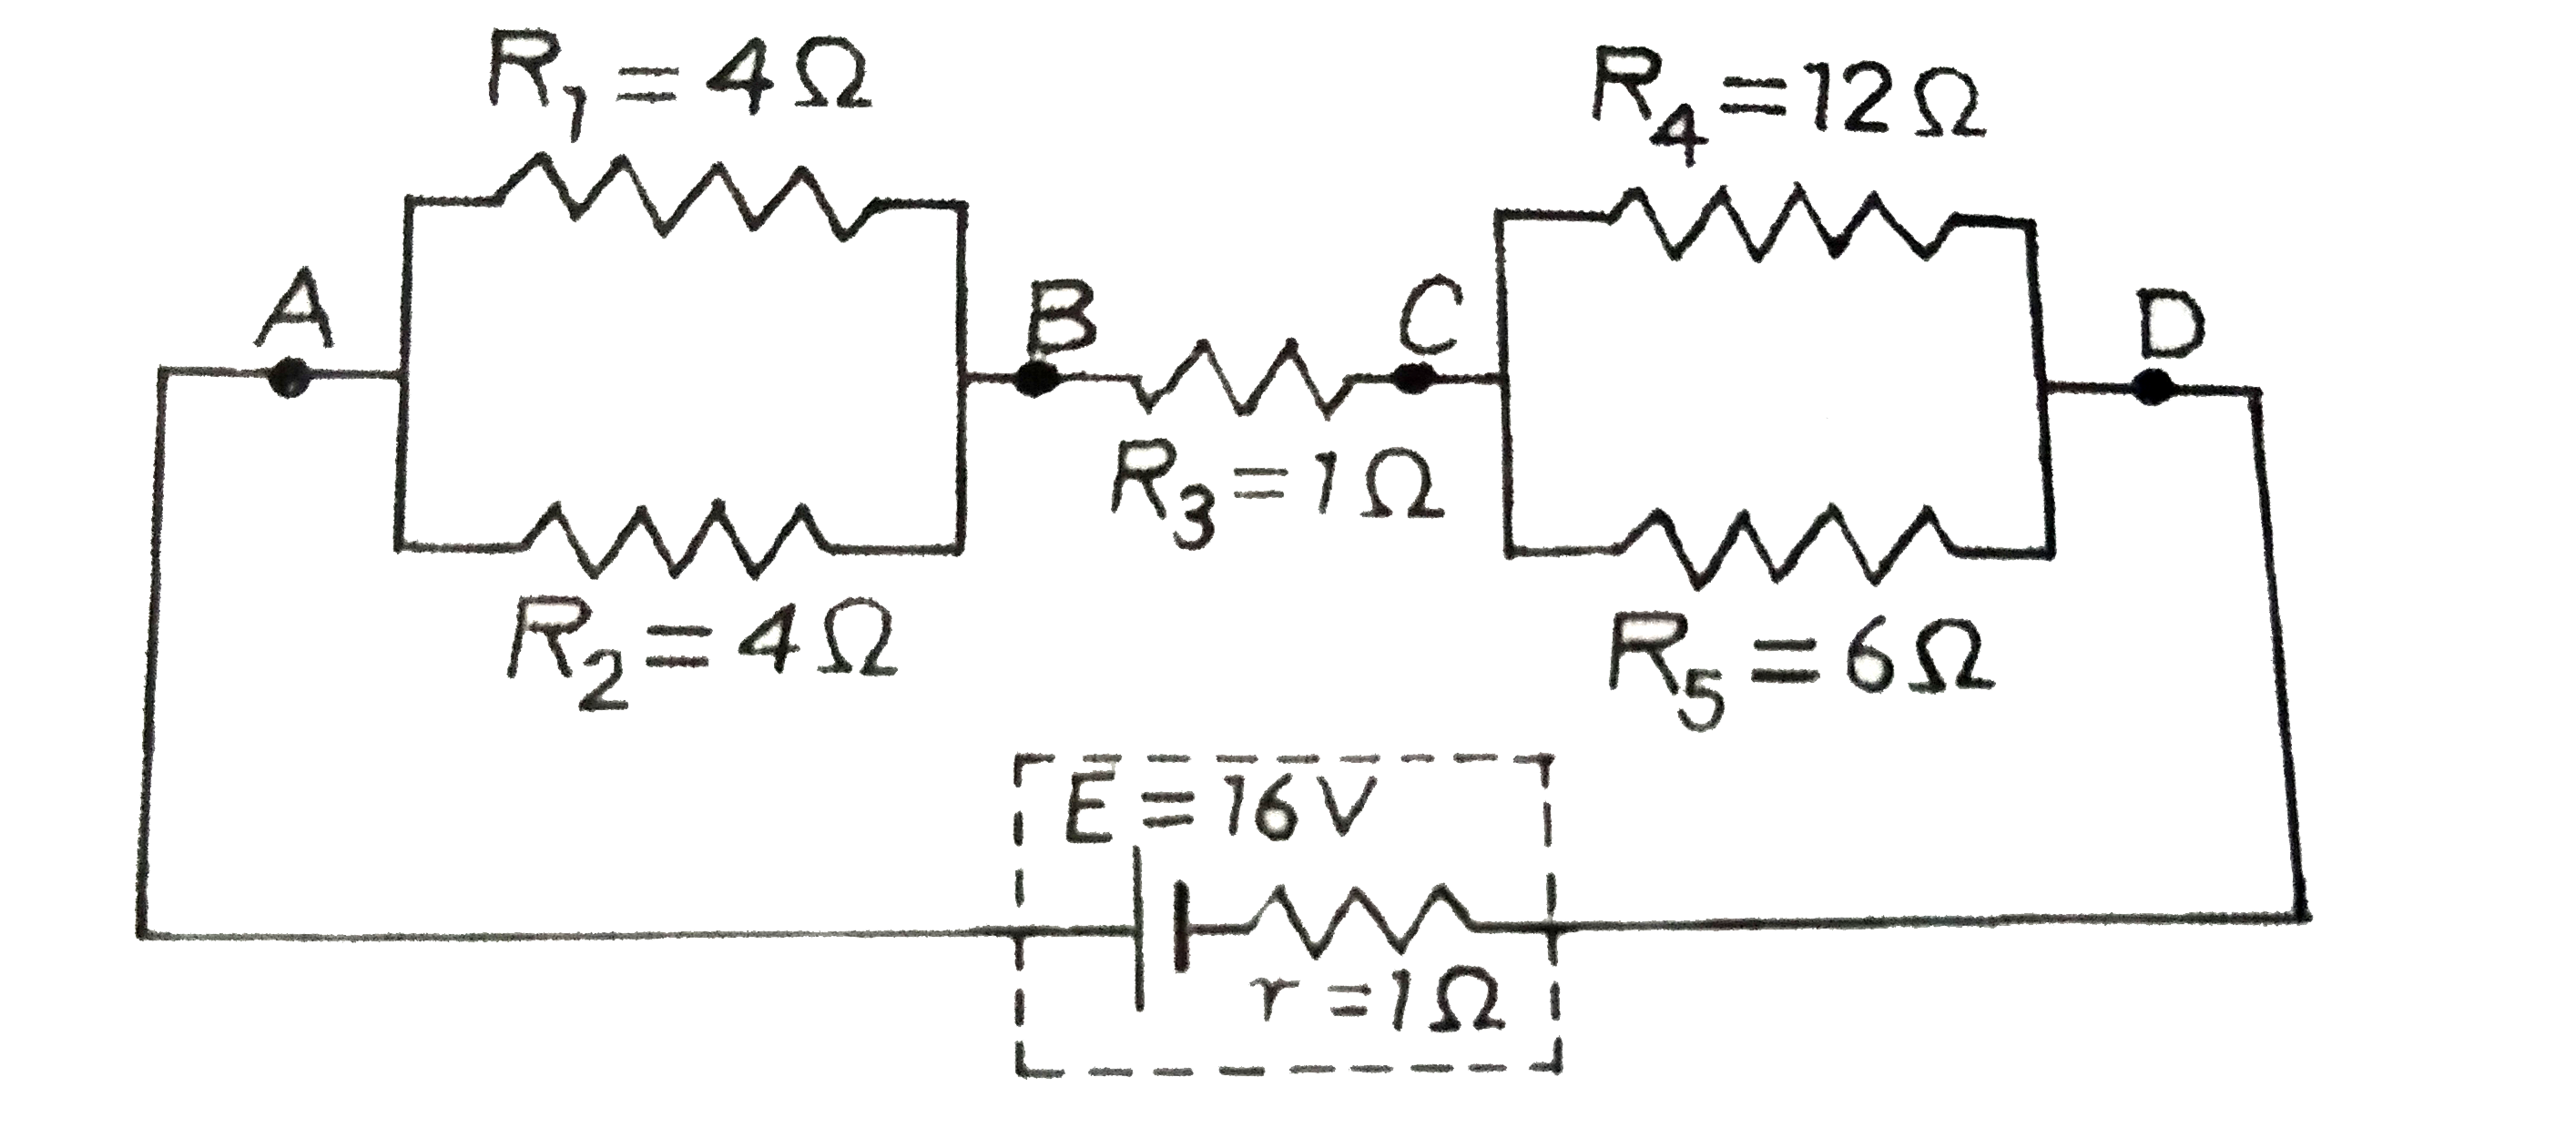 निम्न परिपथ आरेख में , ज्ञात कीजिए  :       परिपथ का तुल्य - प्रतिरोध  तथा R(3),R(4)    प्रतिरोधों में प्रवाहित धाराएँ ।